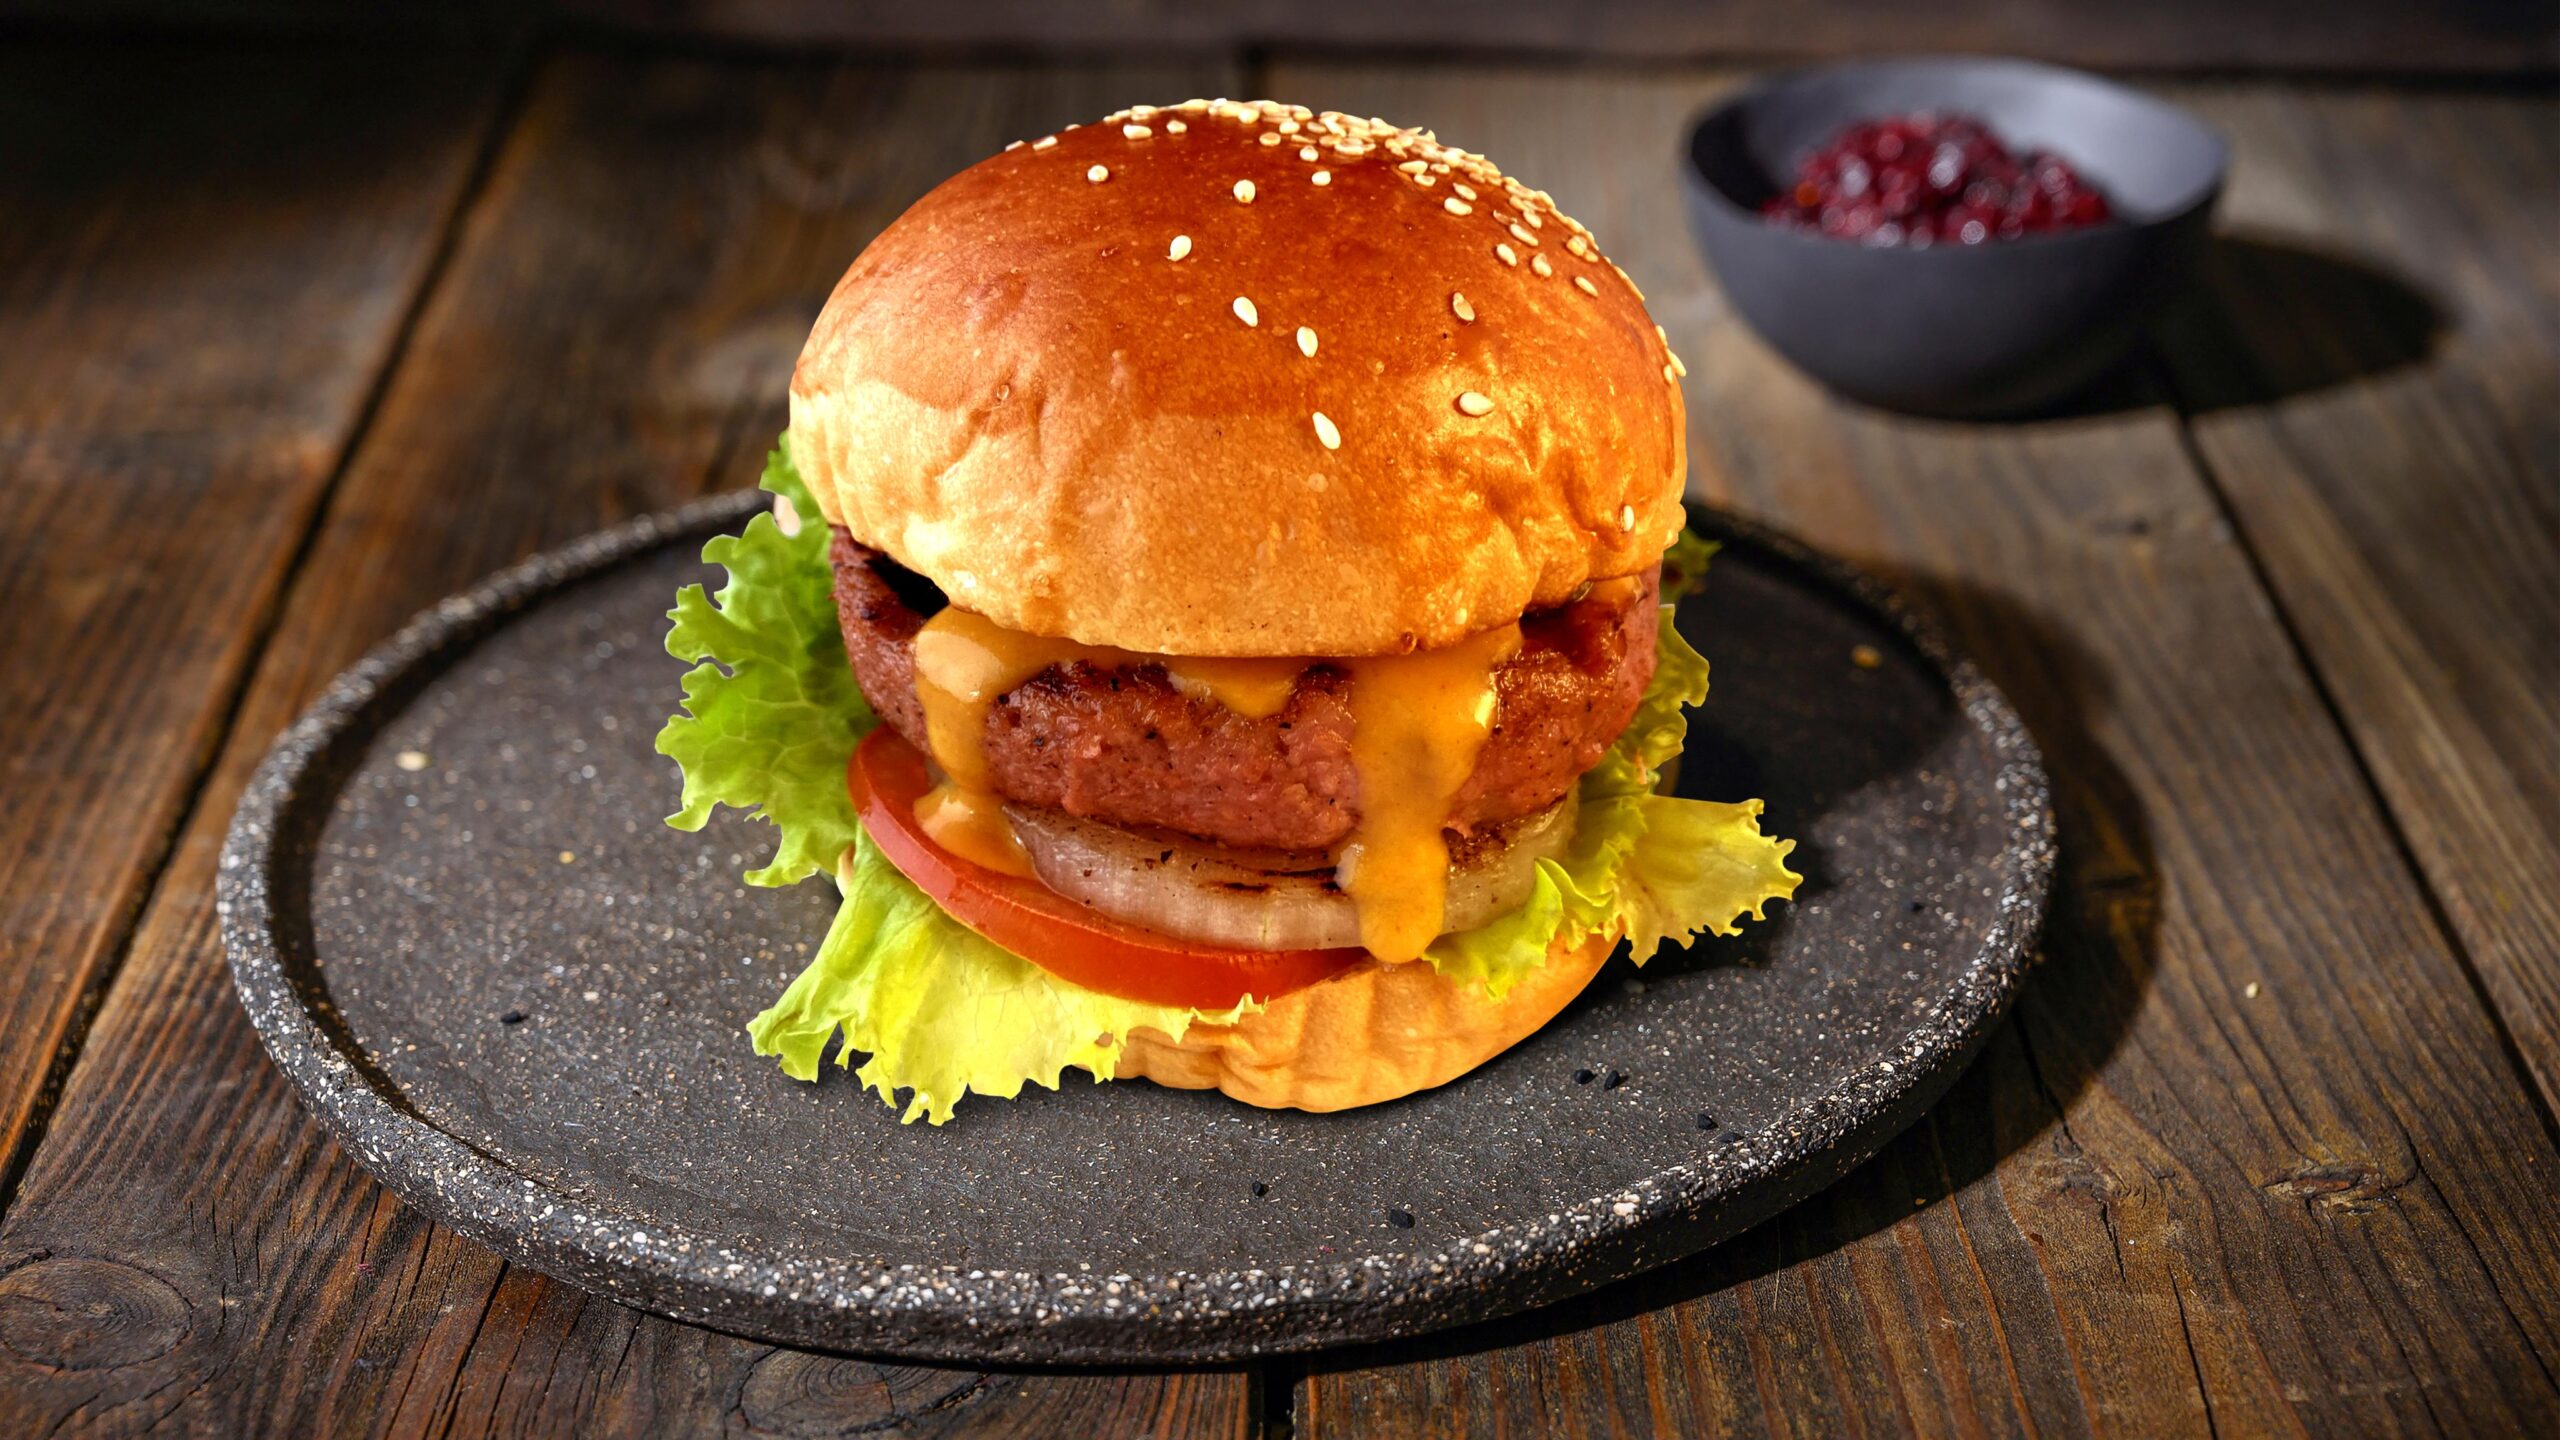 Hamburger Lớn Hình ảnh Sẵn có  Tải xuống Hình ảnh Ngay bây giờ  Burger  phô mai Bánh mì  Thực phẩm chủ yếu Bánh mì kẹp thịt  iStock